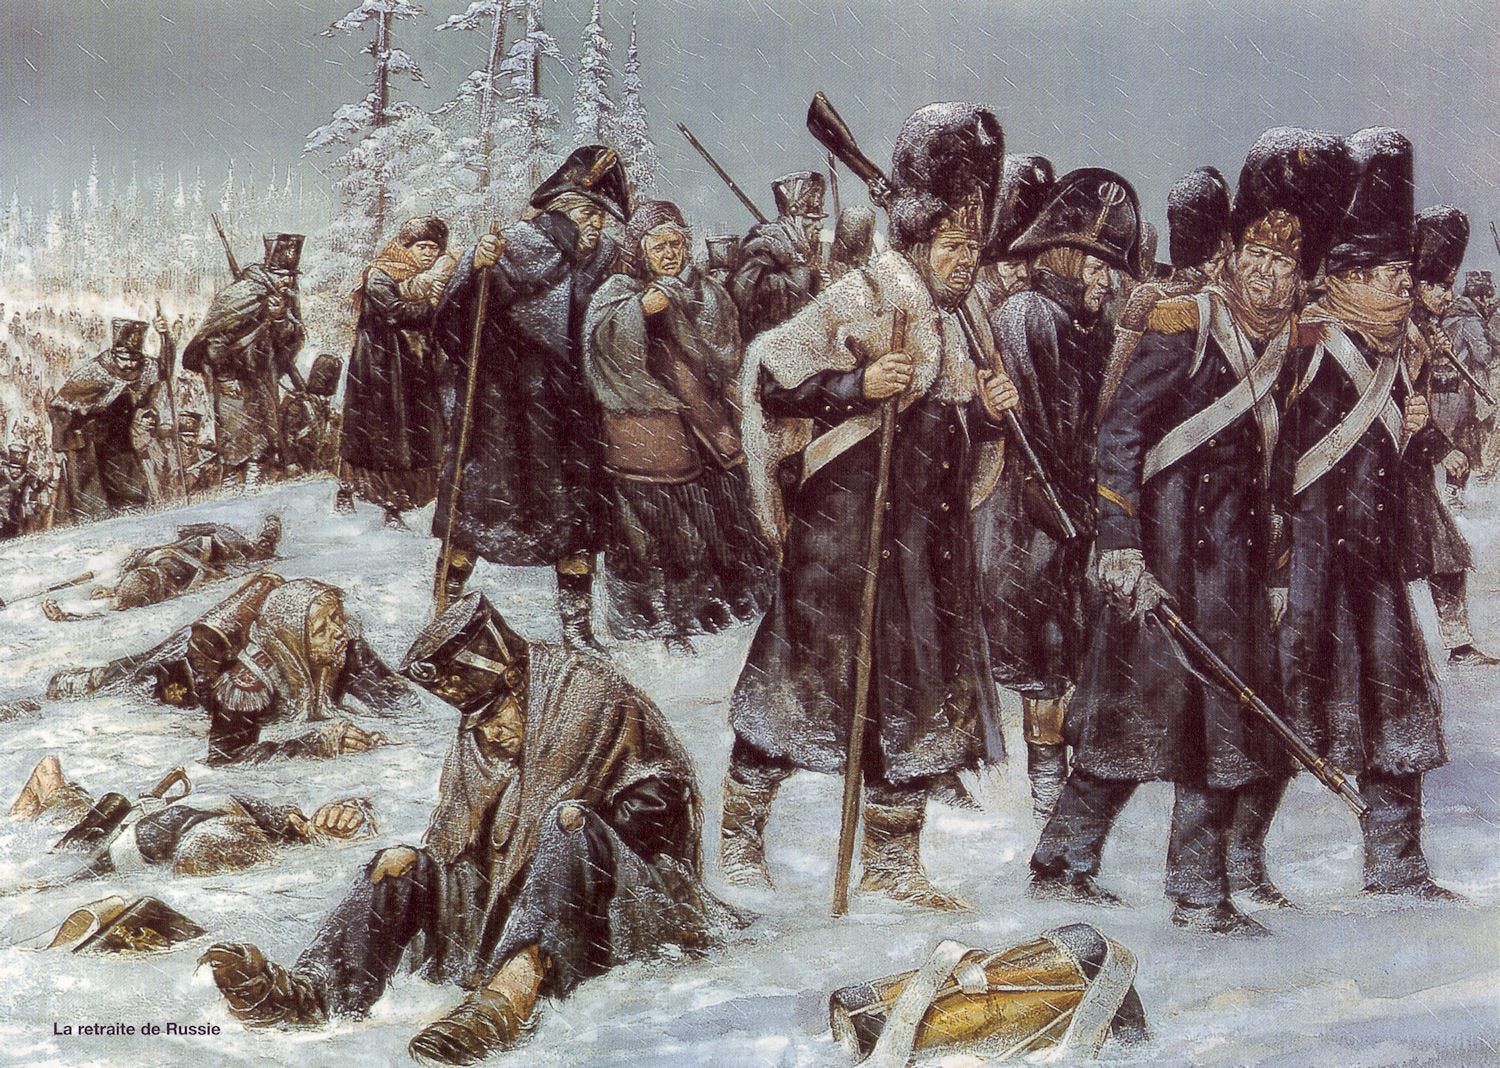 لوحة تجسد جيش نابليون منهكا بسبب البرد والمرض بروسيا